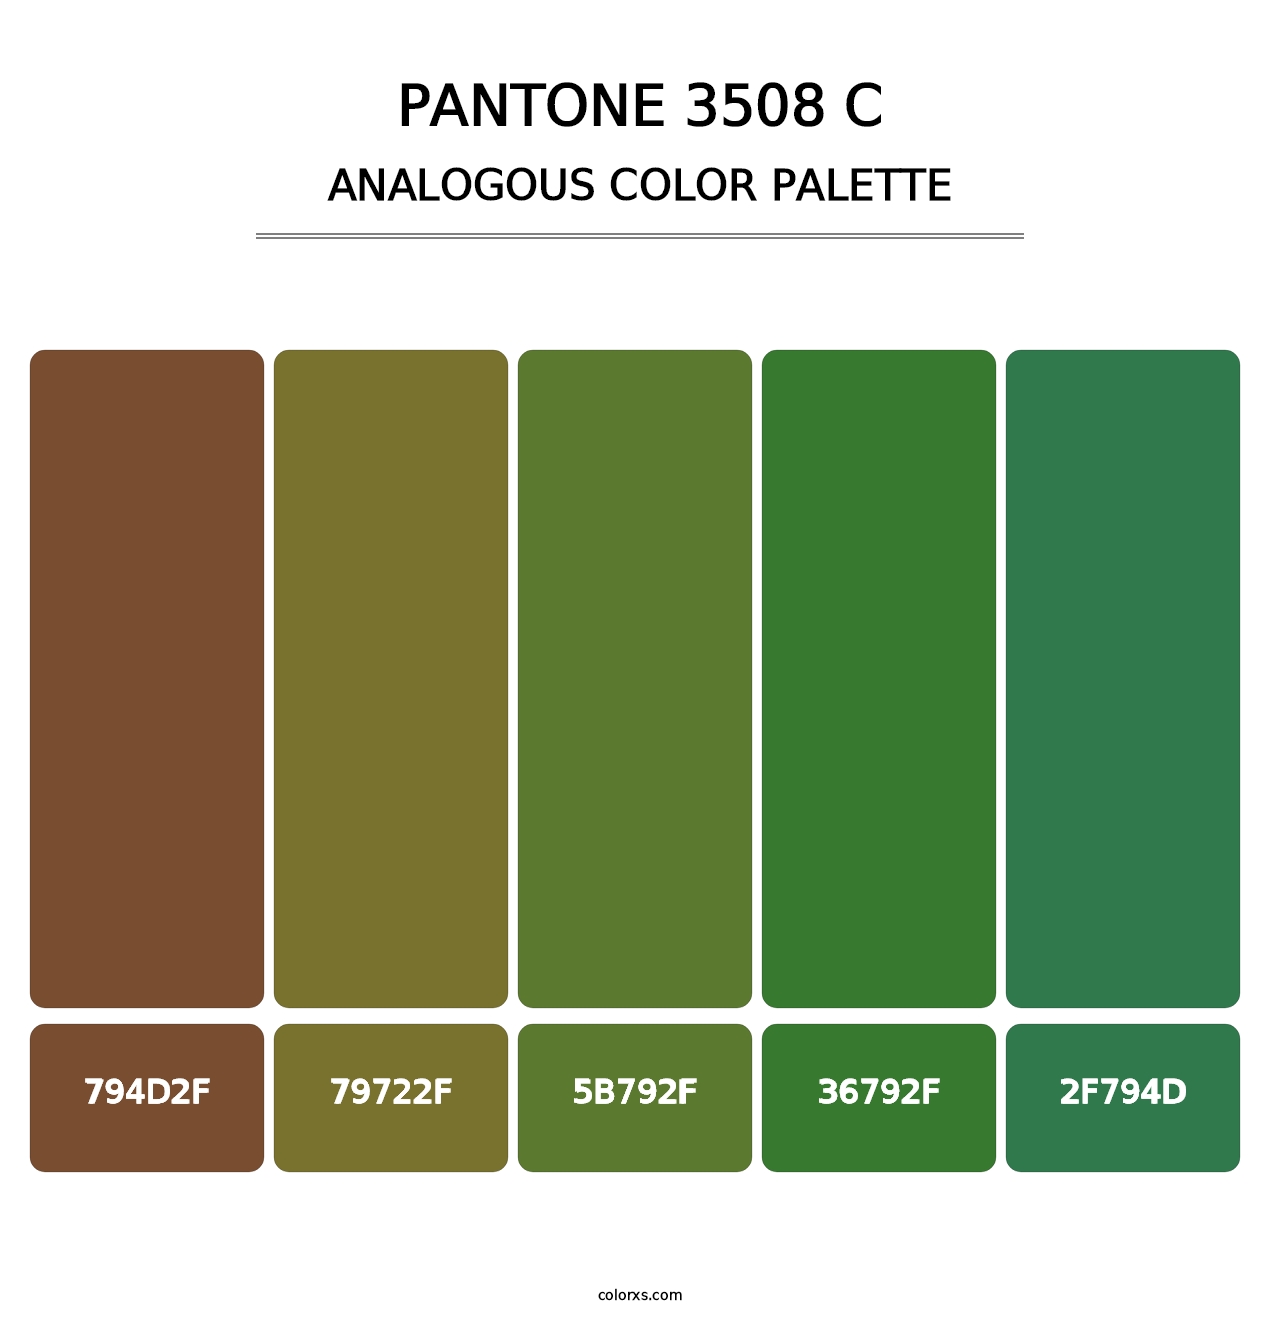 PANTONE 3508 C - Analogous Color Palette